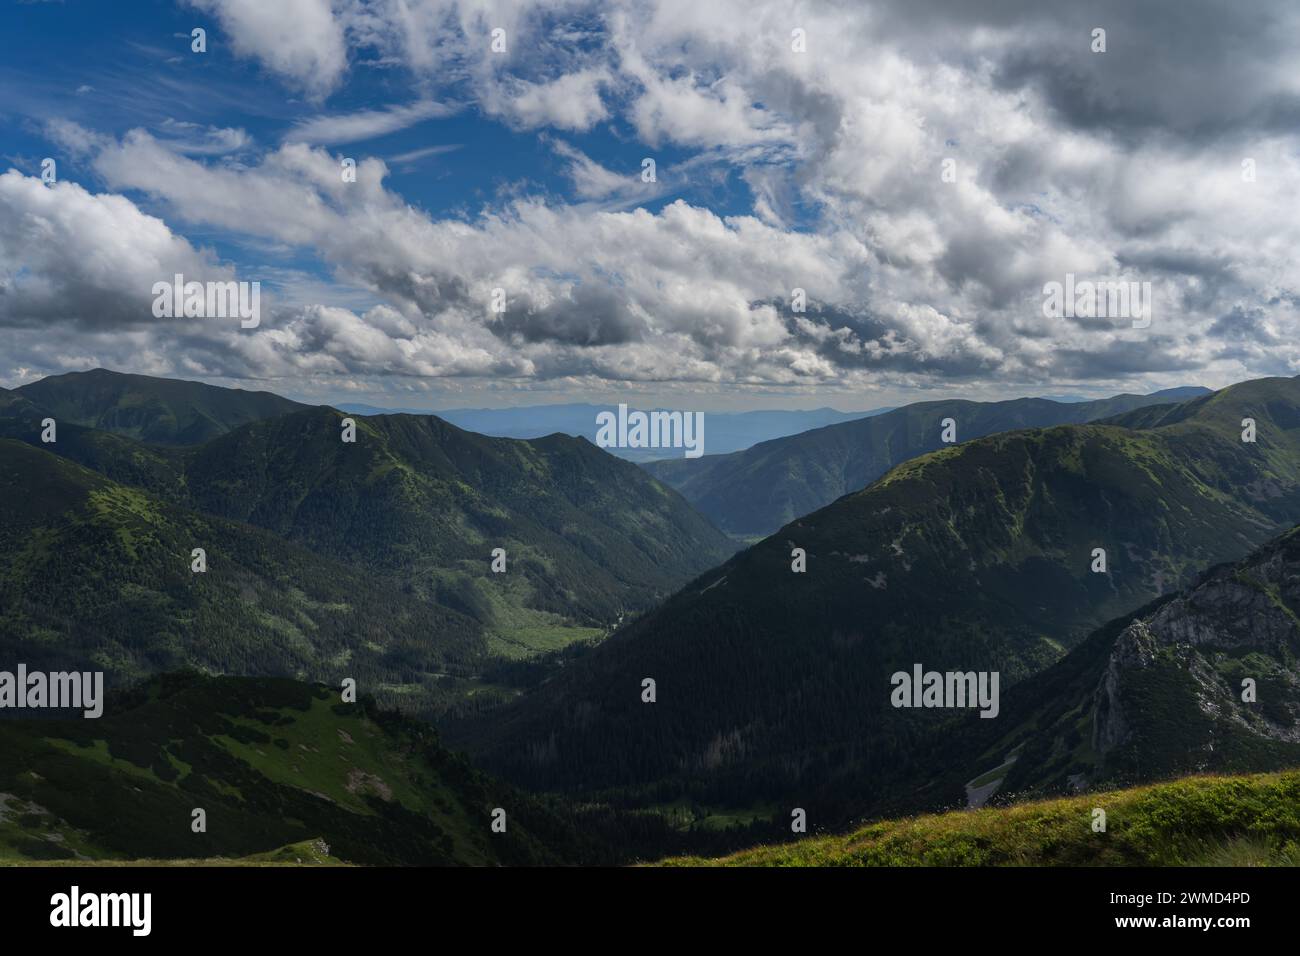 Paysage de montagne dans les montagnes polonaises en été, ciel avec des nuages d'orage. Photo de haute qualité Banque D'Images